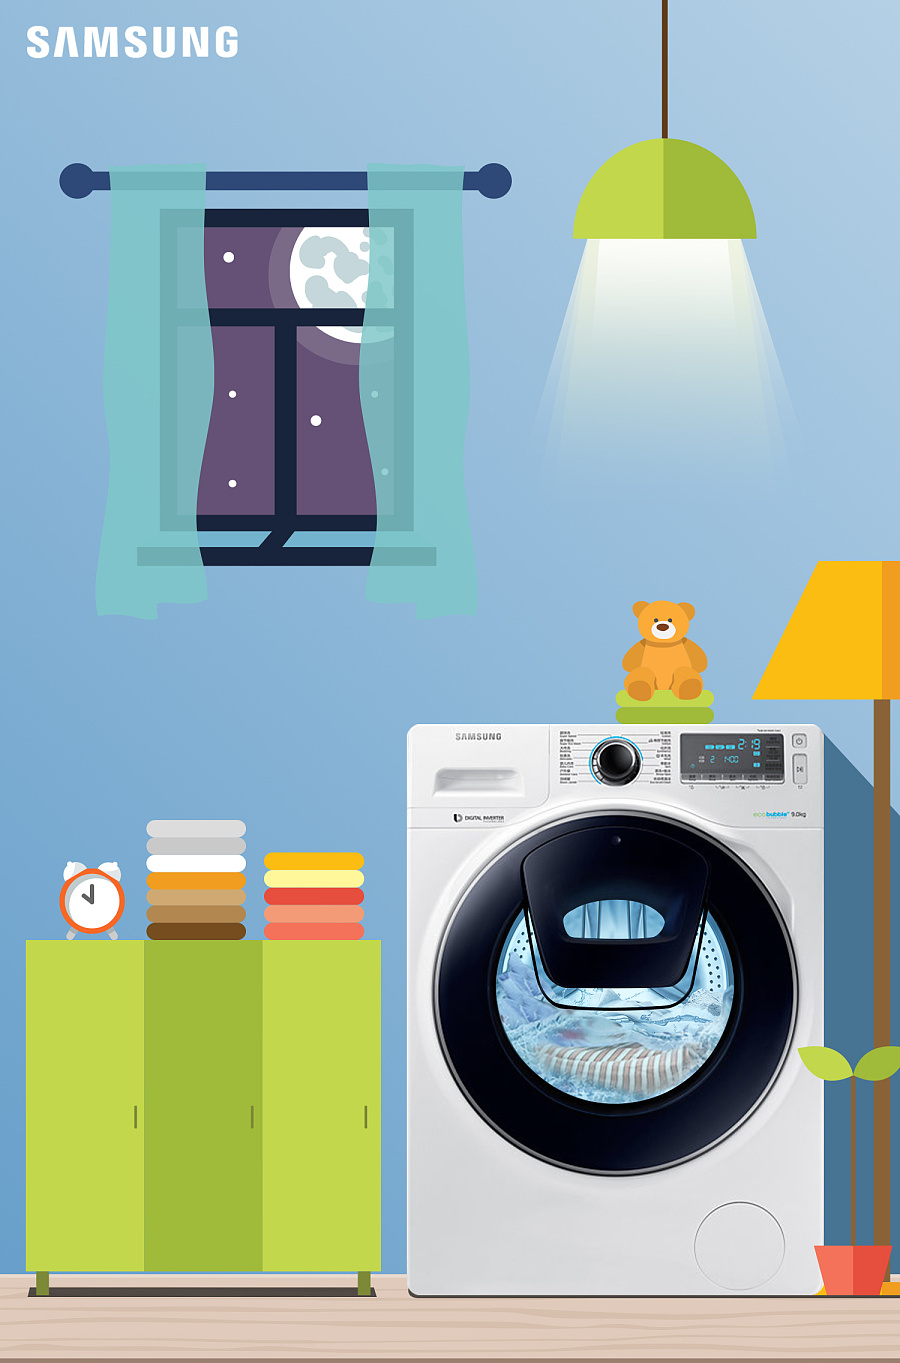 【三星家电】微博推广海报设计作品-洗衣机|D